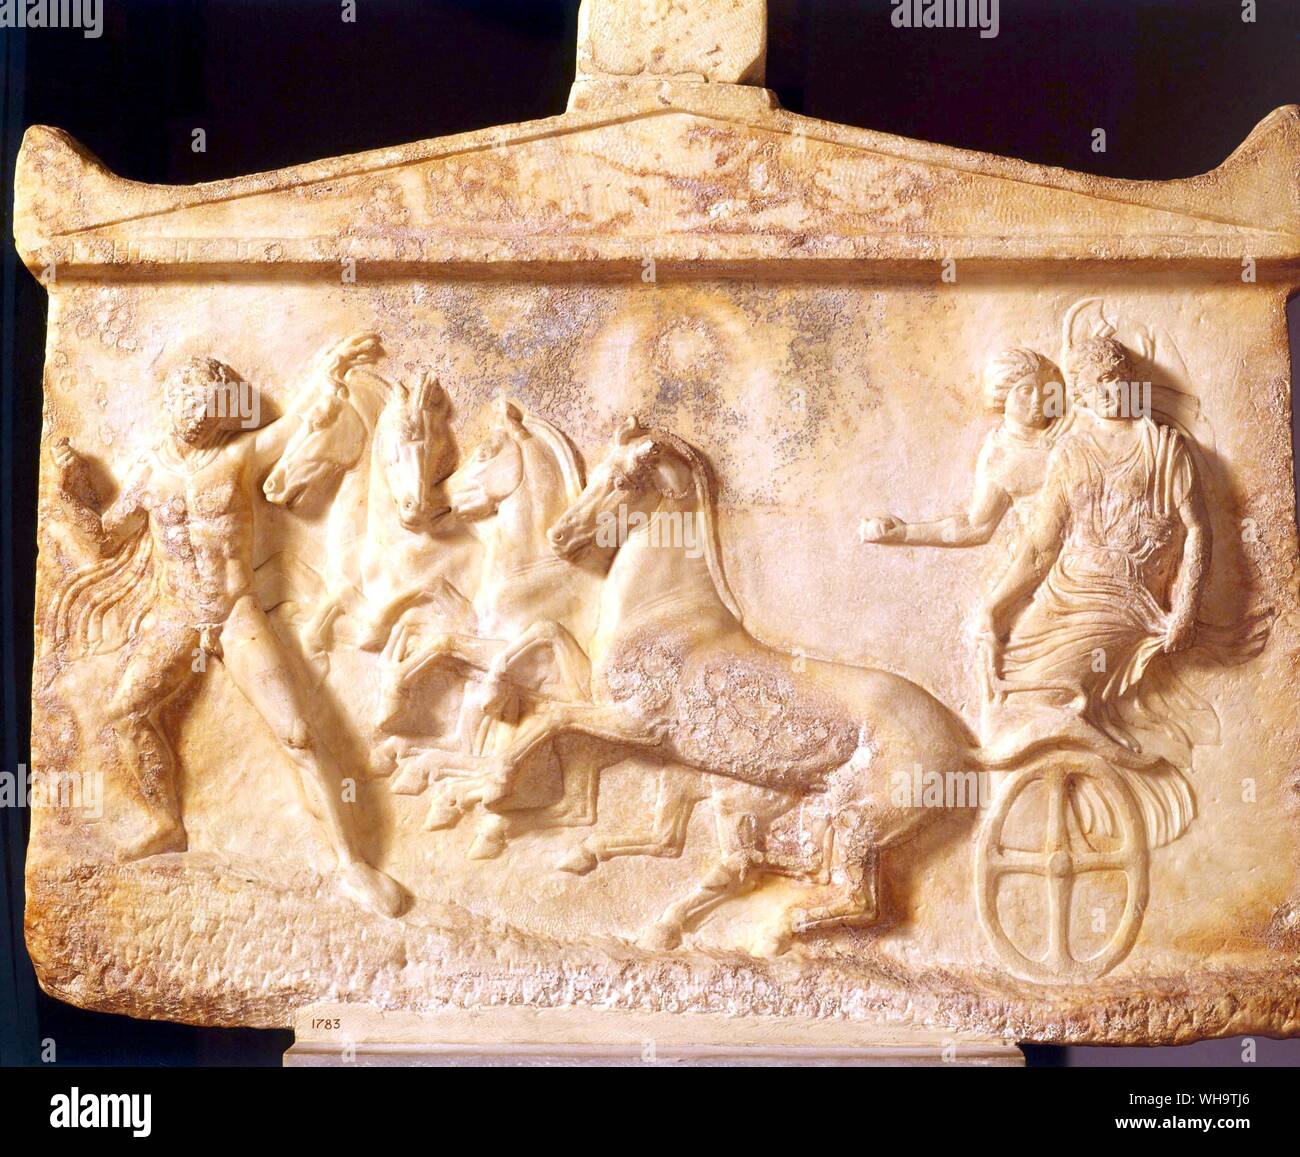 Grabstein mit einer griechischen Helden, Echelos, mehr Aufmerksamkeit auf Basile, denen er Rettung aus der Unterwelt, als zu den Pferden, die angemessen sind in bergauf zu kämpfen. Hermes, der den Weg zeigt, vermutlich hielt eine bemalte Fackel in der linken Hand. Stockfoto